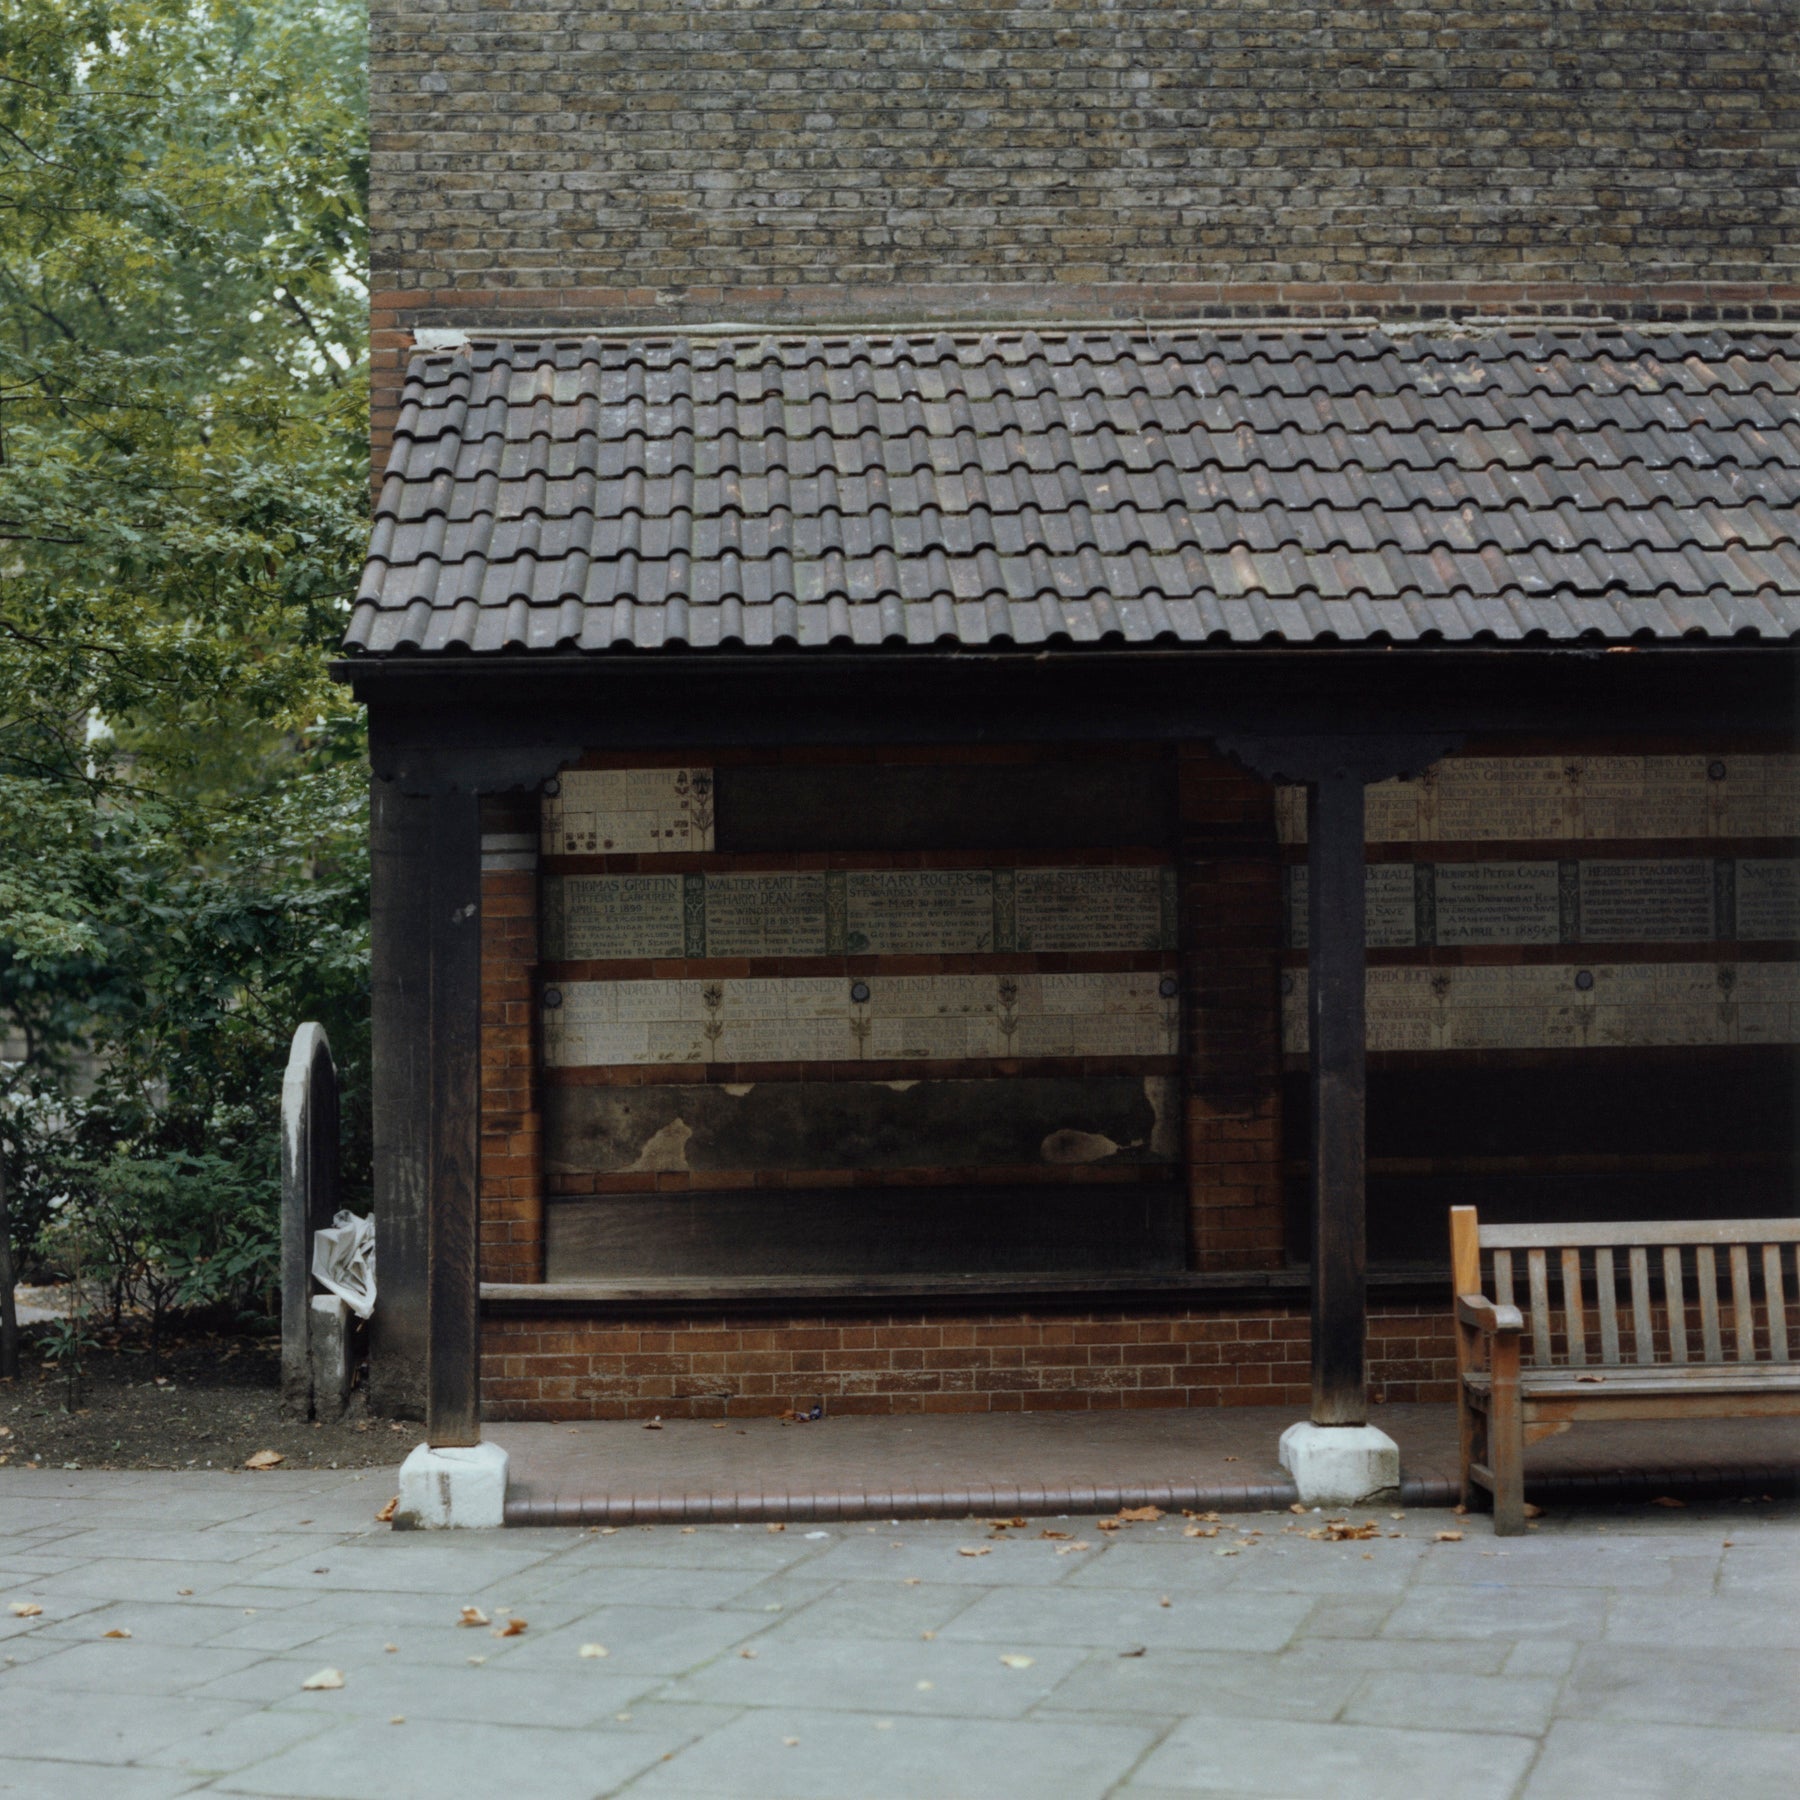 St. Botolph's Graveyard, Bishopsgate, London, 1979 - 7x9" Print